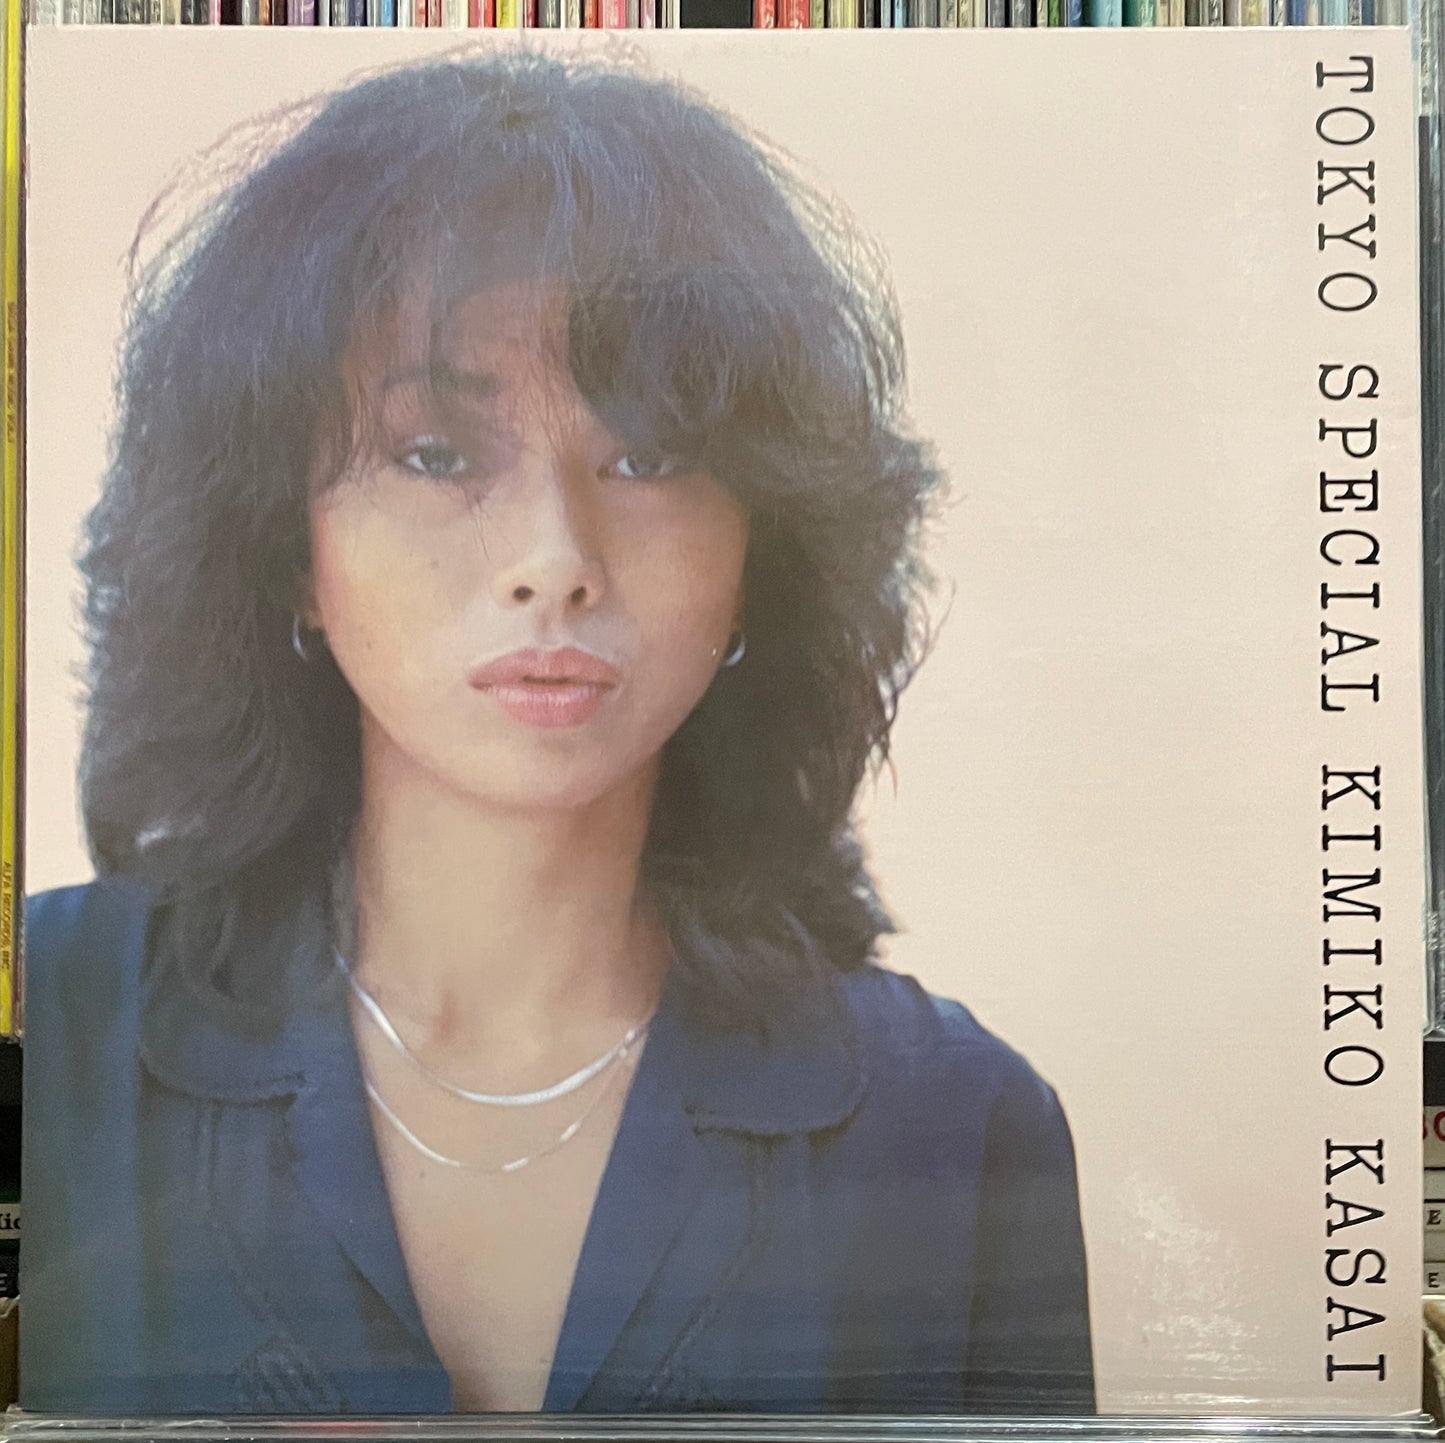 Kimiko Kasai “Tokyo Special” (1977)